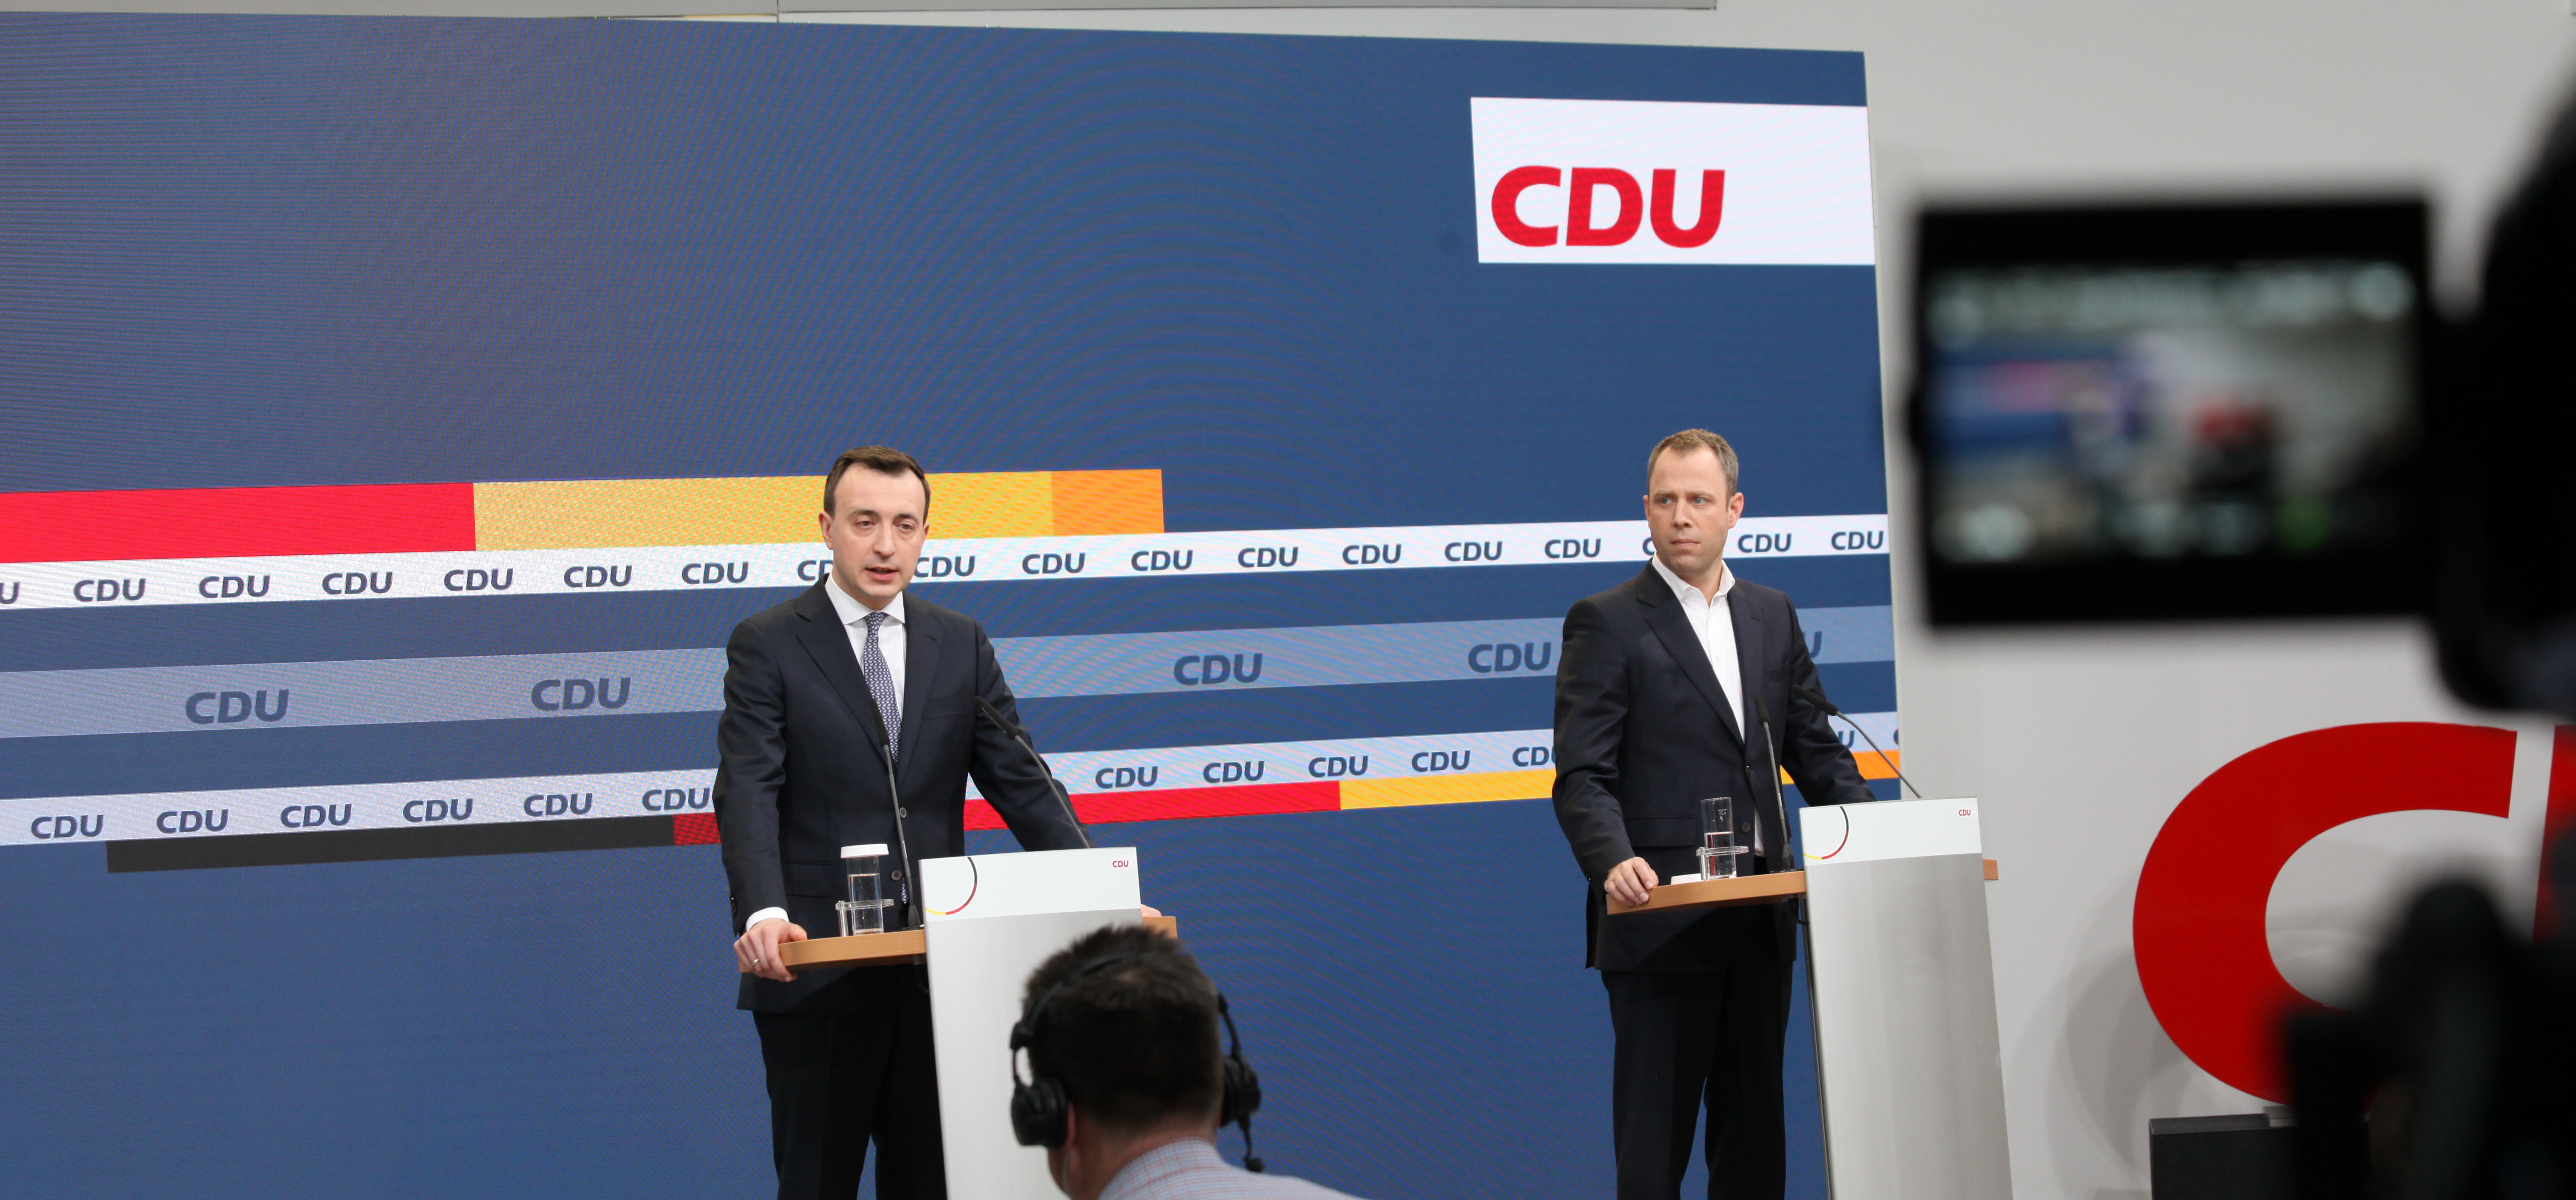 Foto: CDU / Kerl